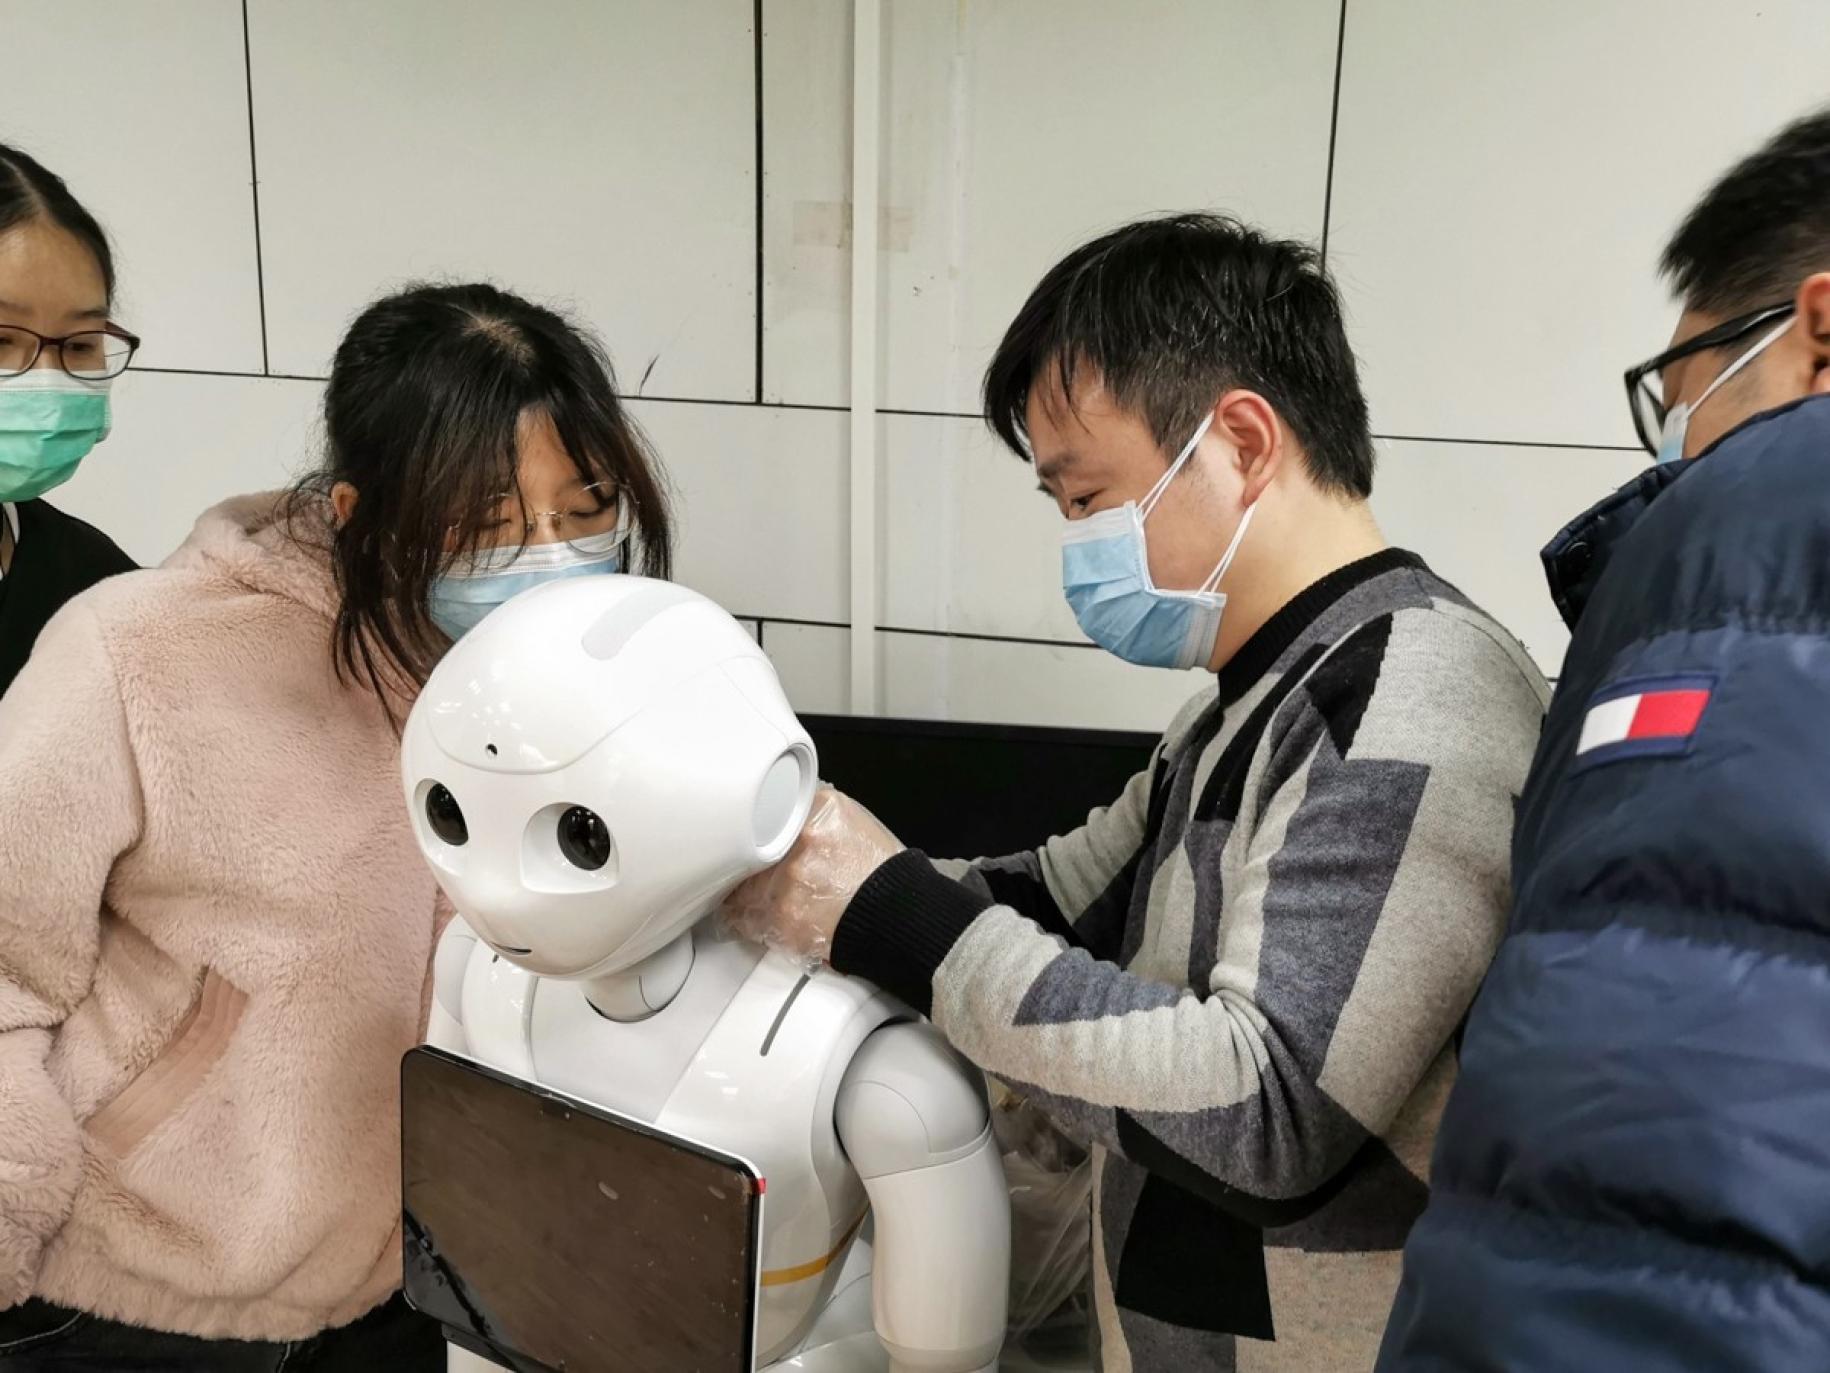 Muestra a jóvenes manejando un robot. Los robots se utilizan en muchos hospitales para entregar alimentos, medicamentos y otros suministros; para desinfectar hospitales y otras áreas públicas para controlar la temperatura de los pacientes y responder preguntas comunes.